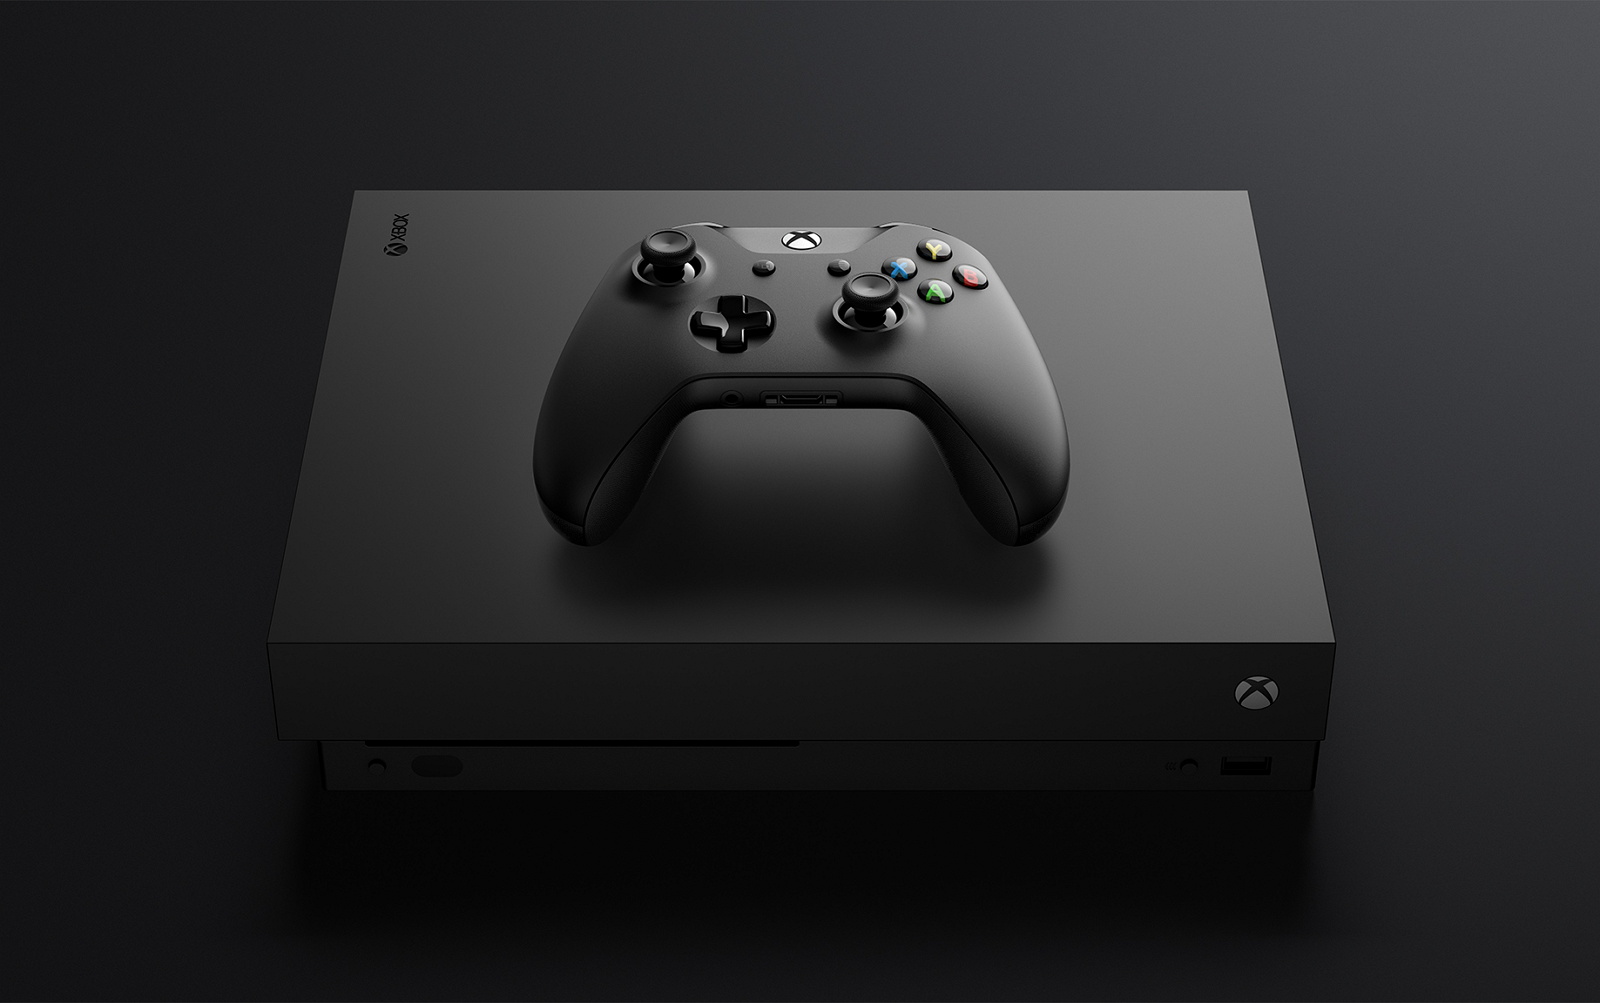 Underholdning taxa Trivial Microsoft's Xbox One X full tech specs - Pureinfotech